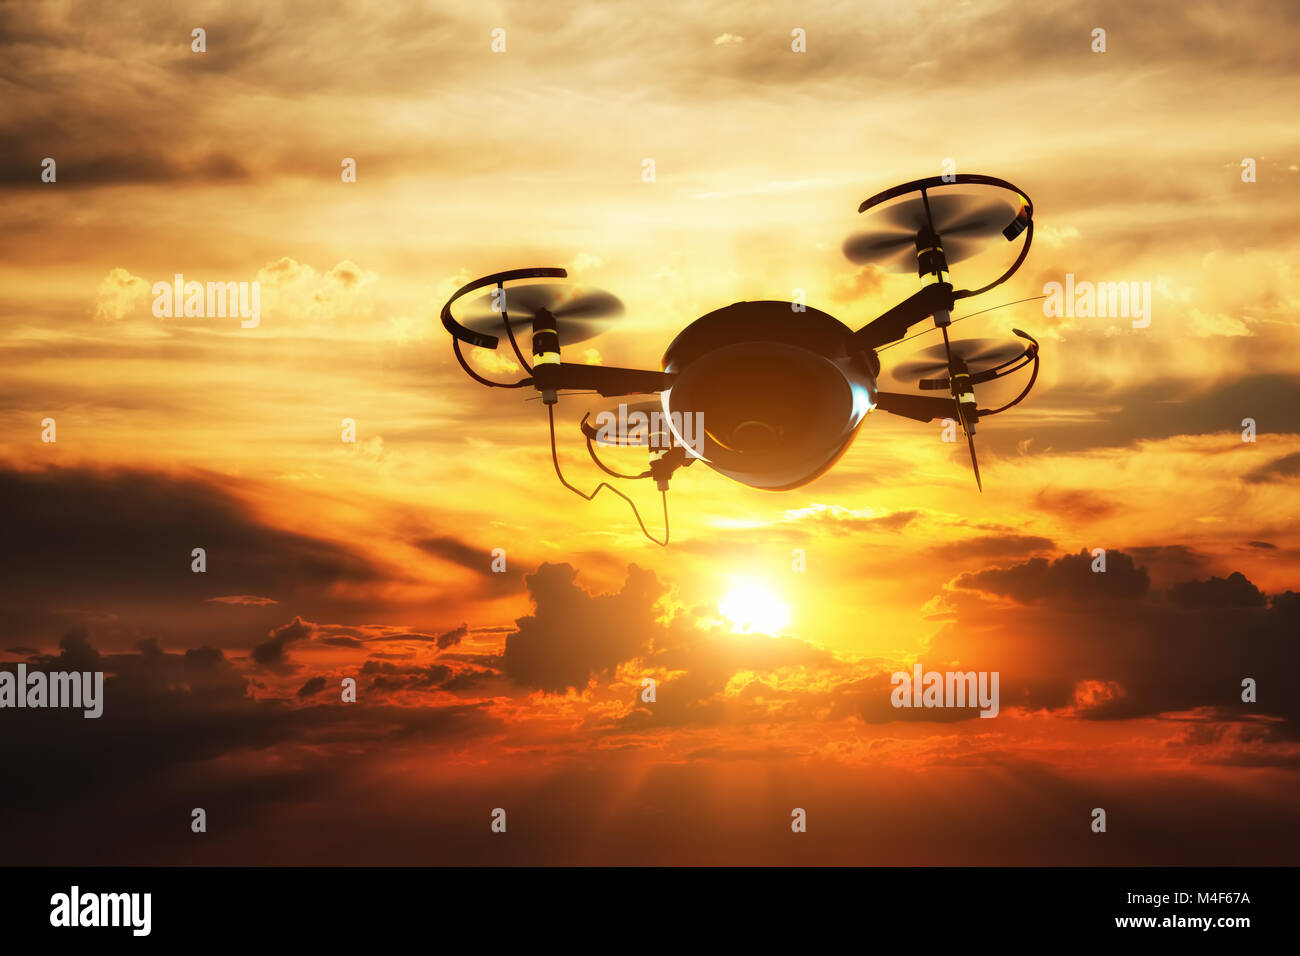 Drohne fliegen bei Sonnenuntergang. Sonne scheint, auf dramatische Himmel. Stockfoto